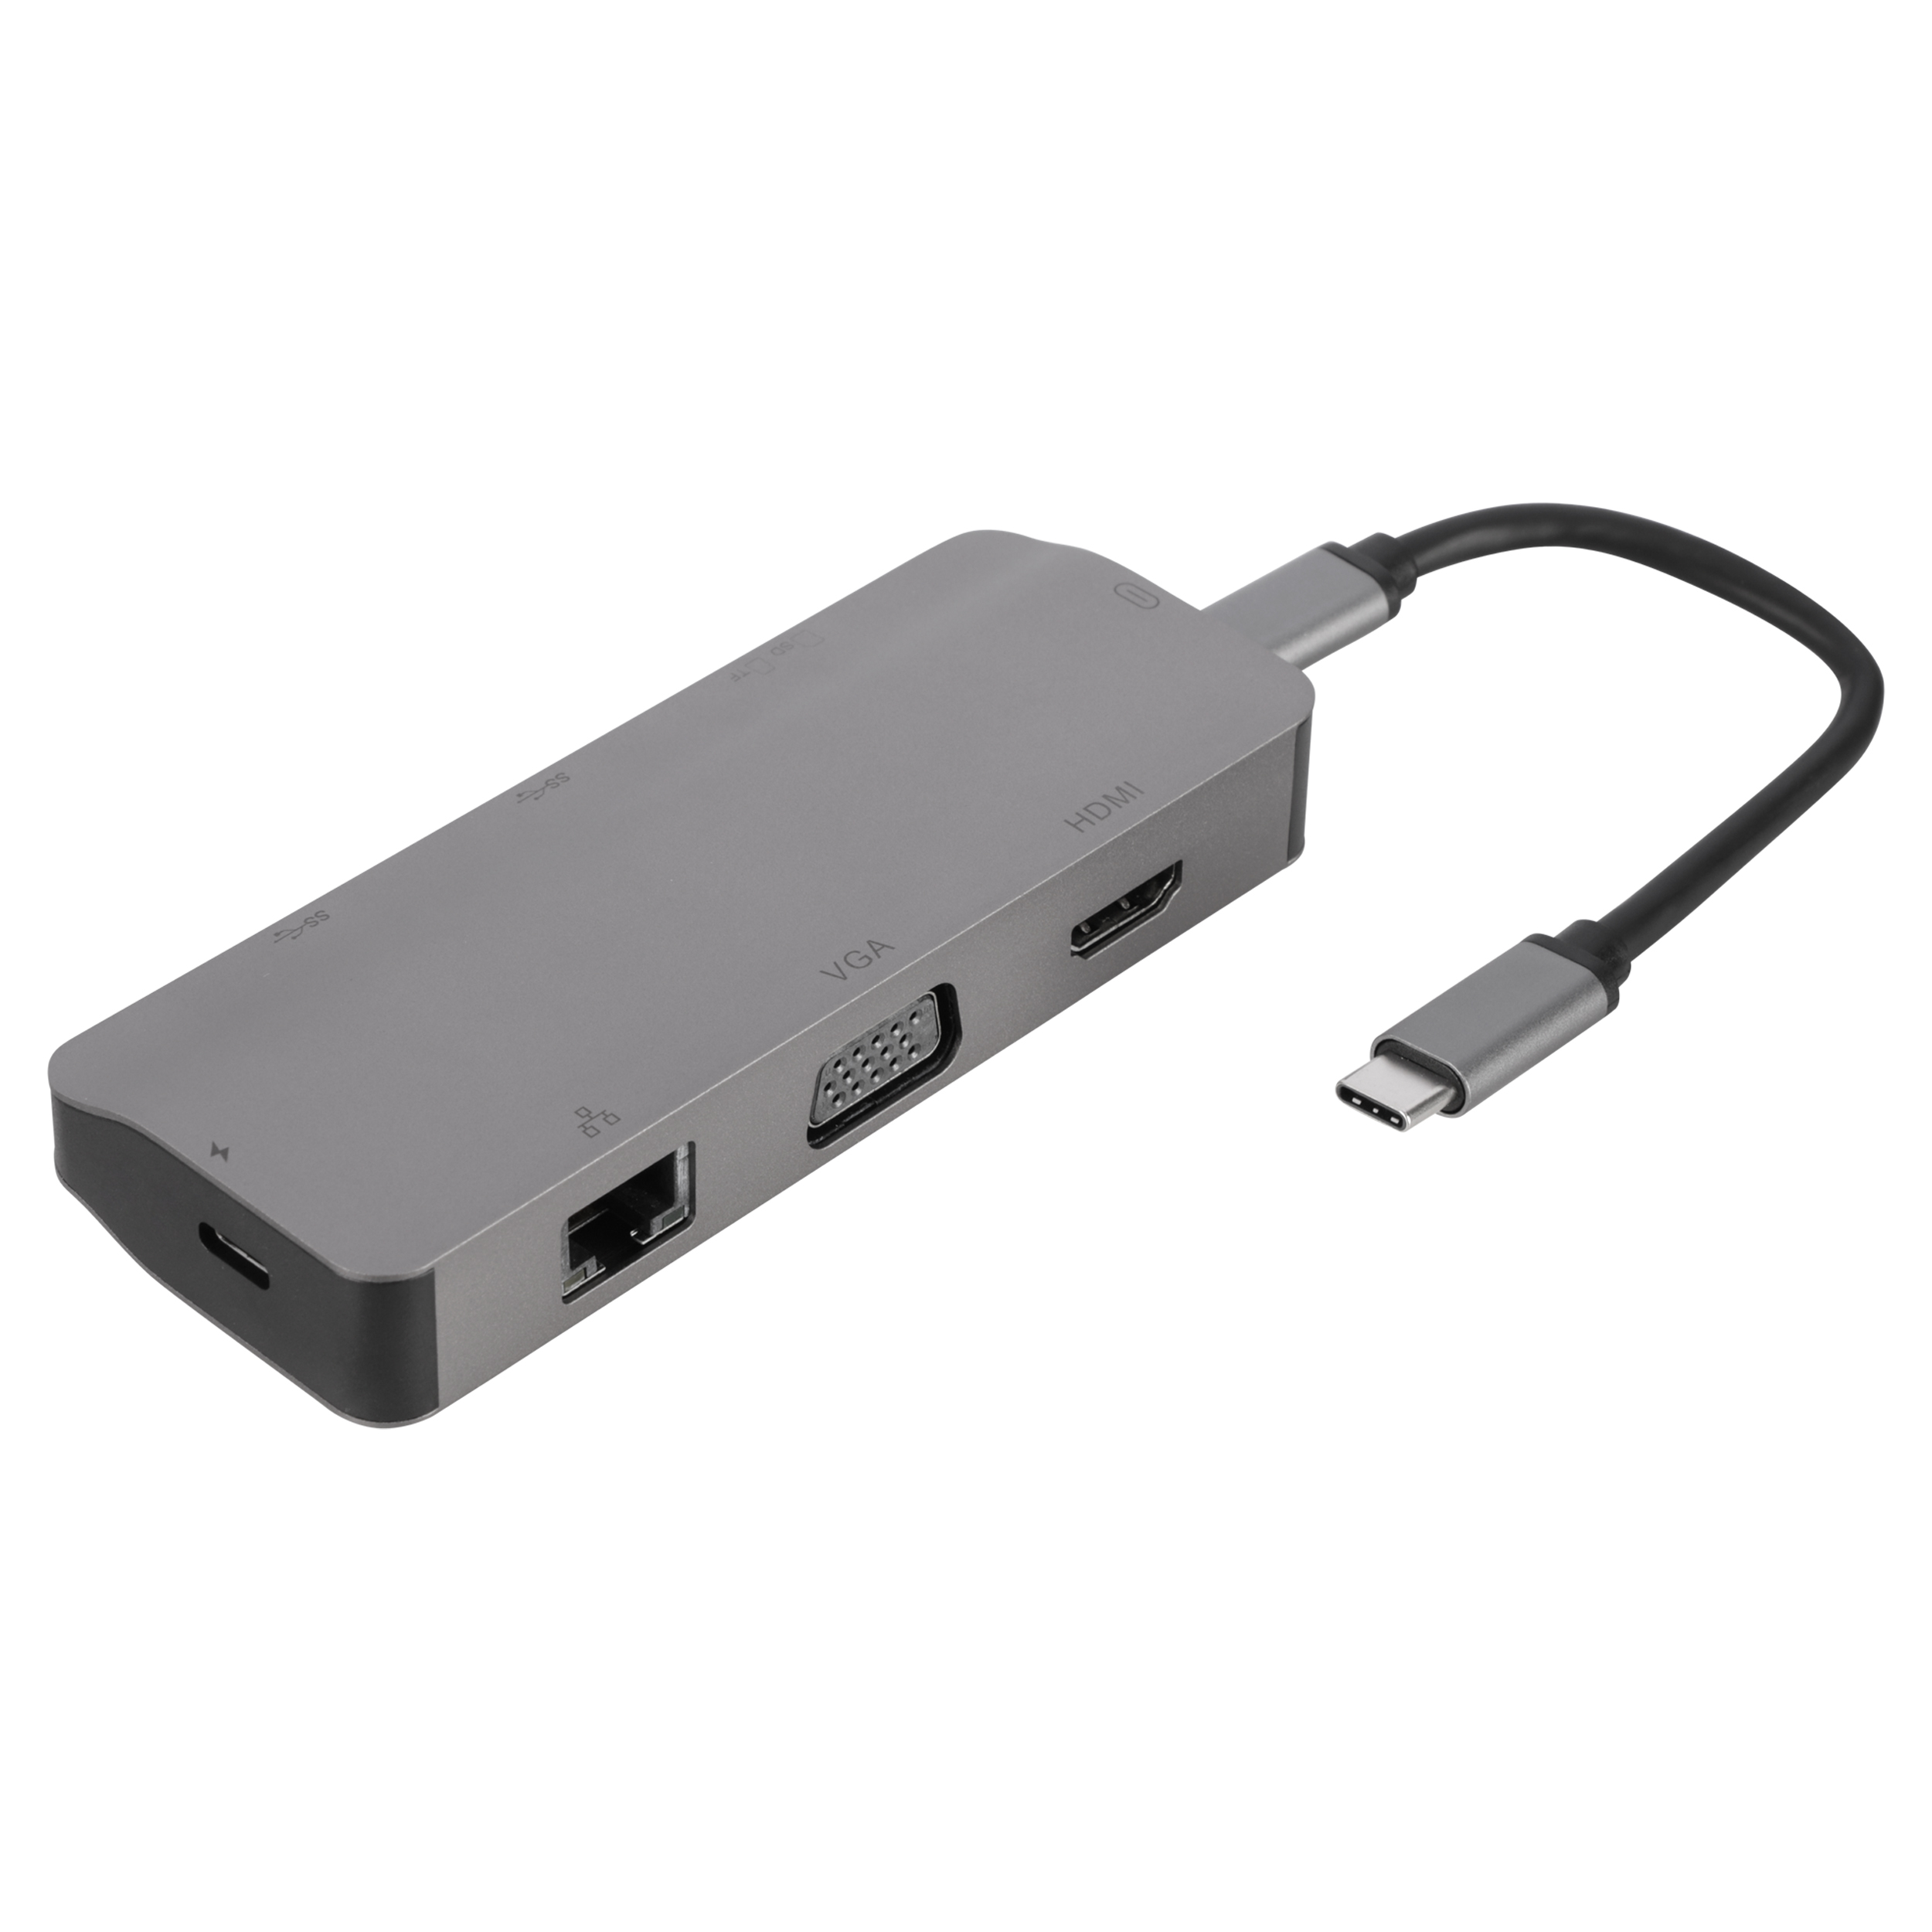 00.132.33 Q-Link  USB-C hub 8-in-1 - multifunctioneel - met kabel 15 cm - grijs